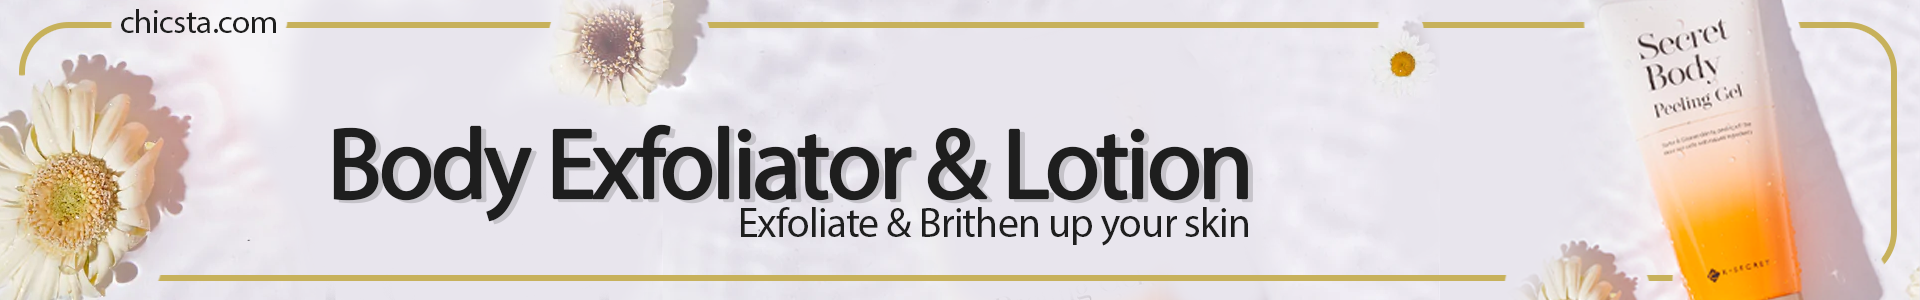 Body Exfoliator & Lotion